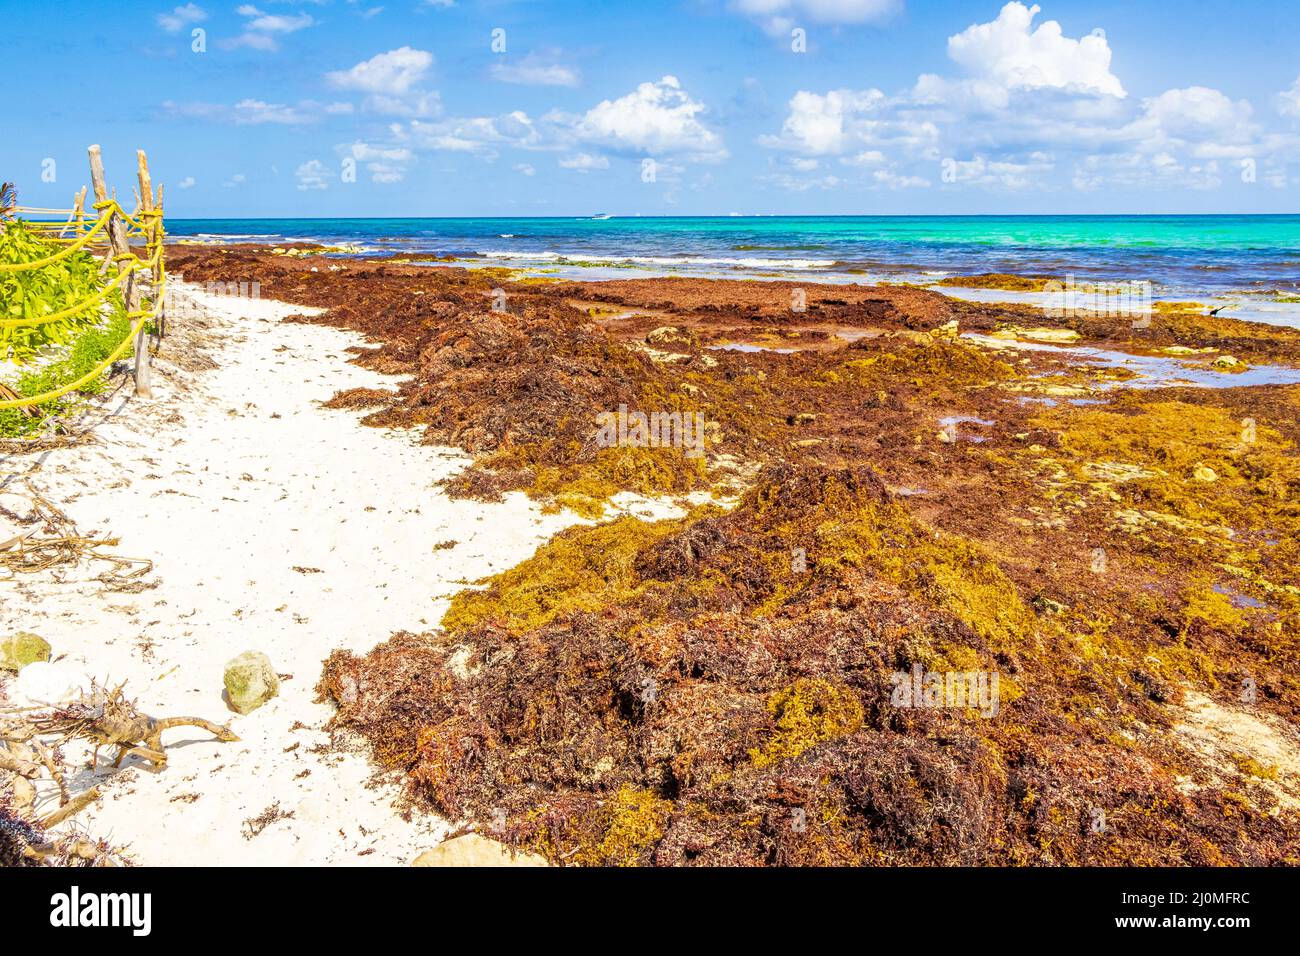 Playa de sargazo de algas rojas muy asquerosas Playa del Carmen México. Foto de stock